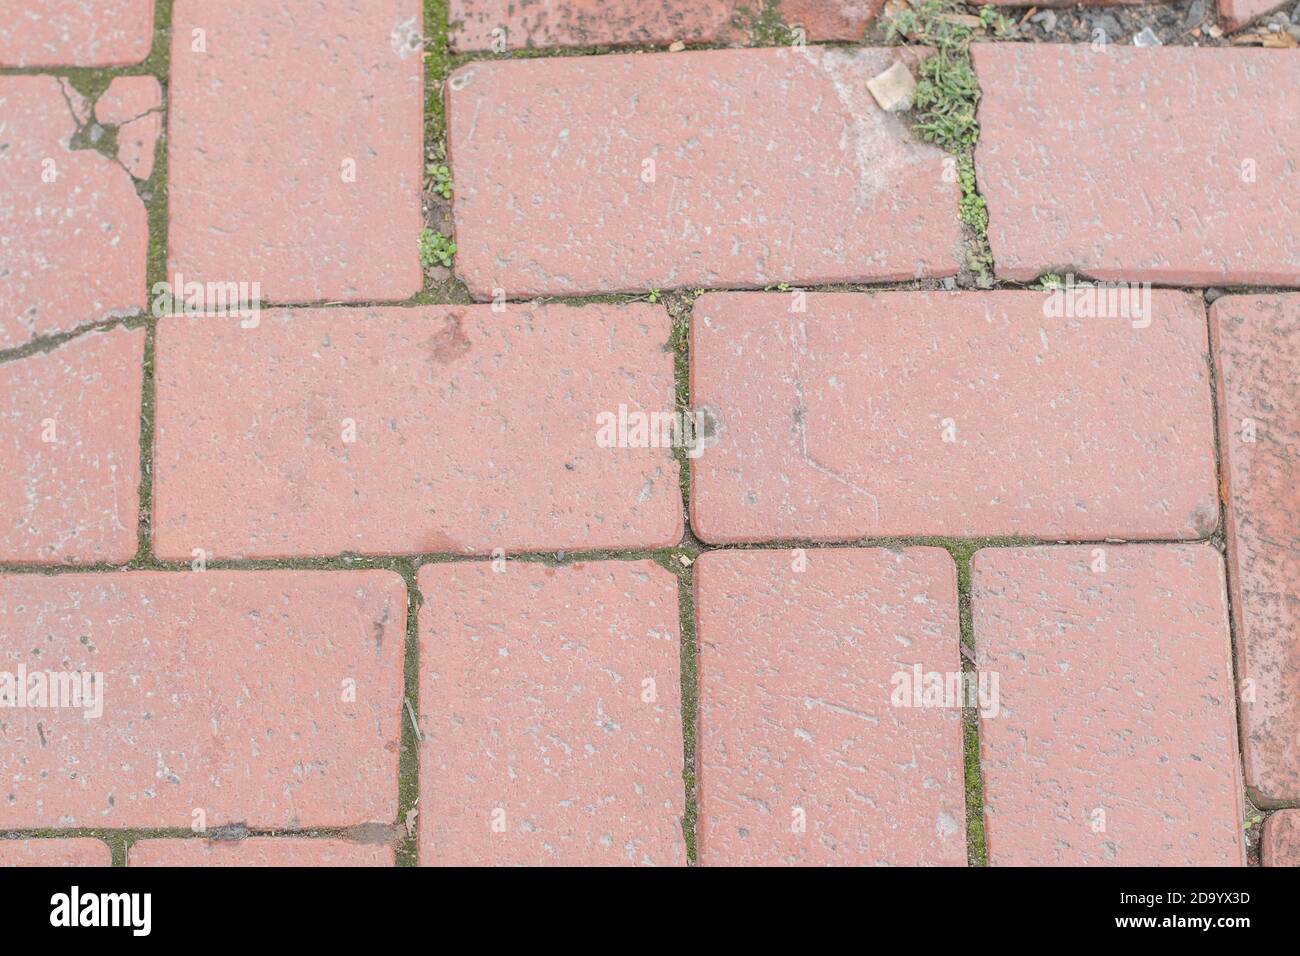 Arrière-plan de la texture de la route de pavage en brique rouge Banque D'Images